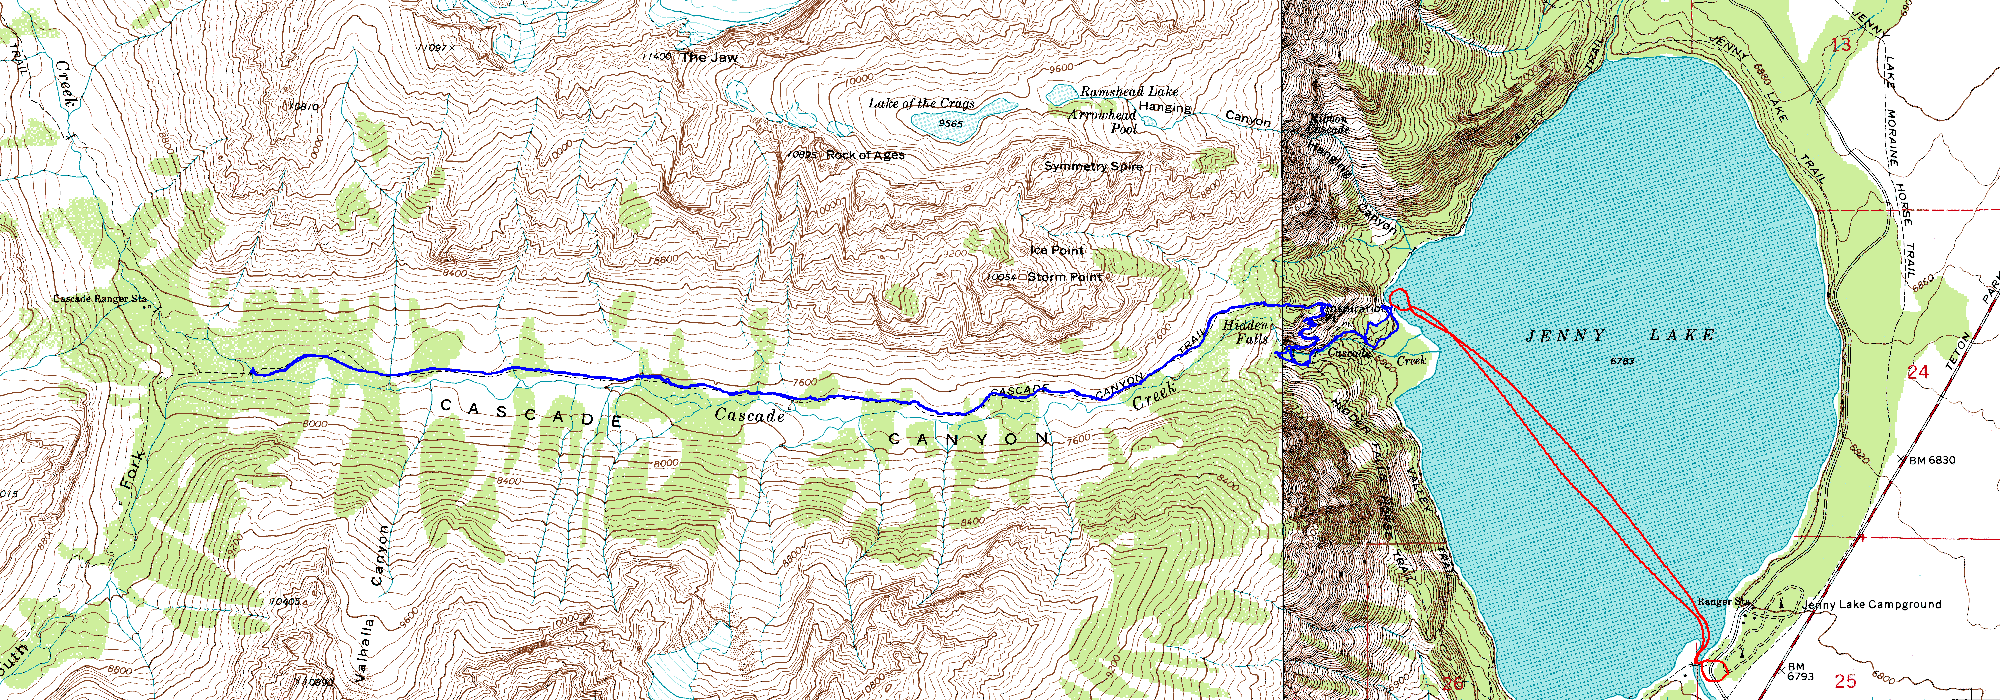 Cascade Canyon Topo Map